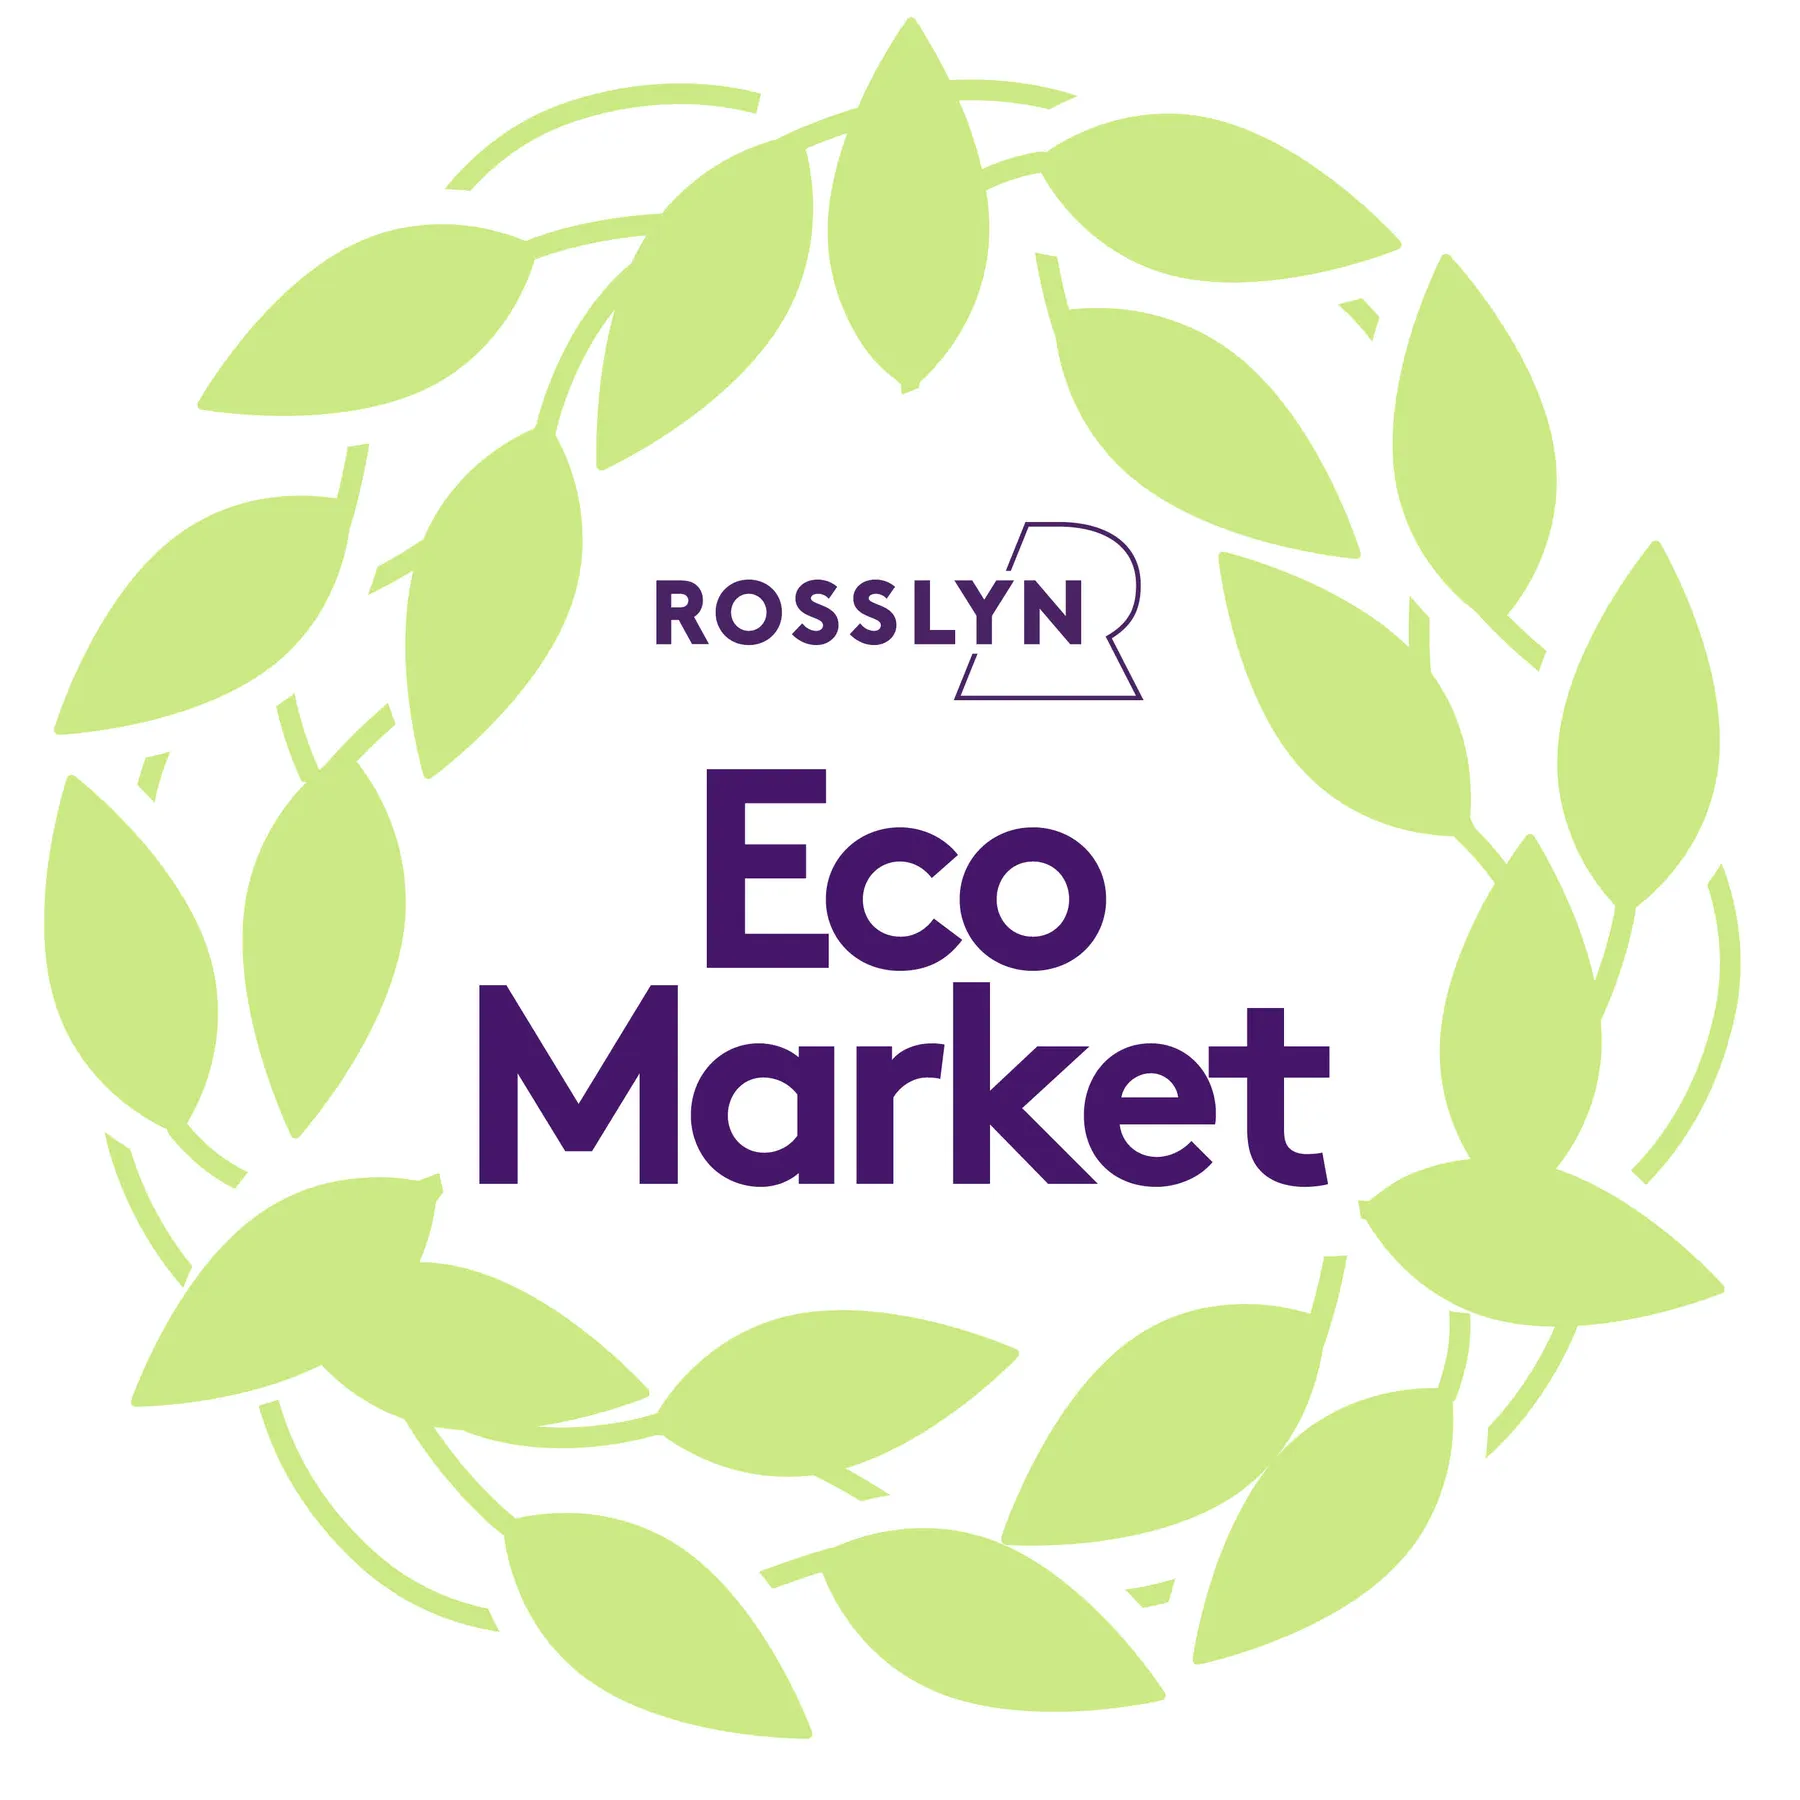 Rosslyn Eco Market